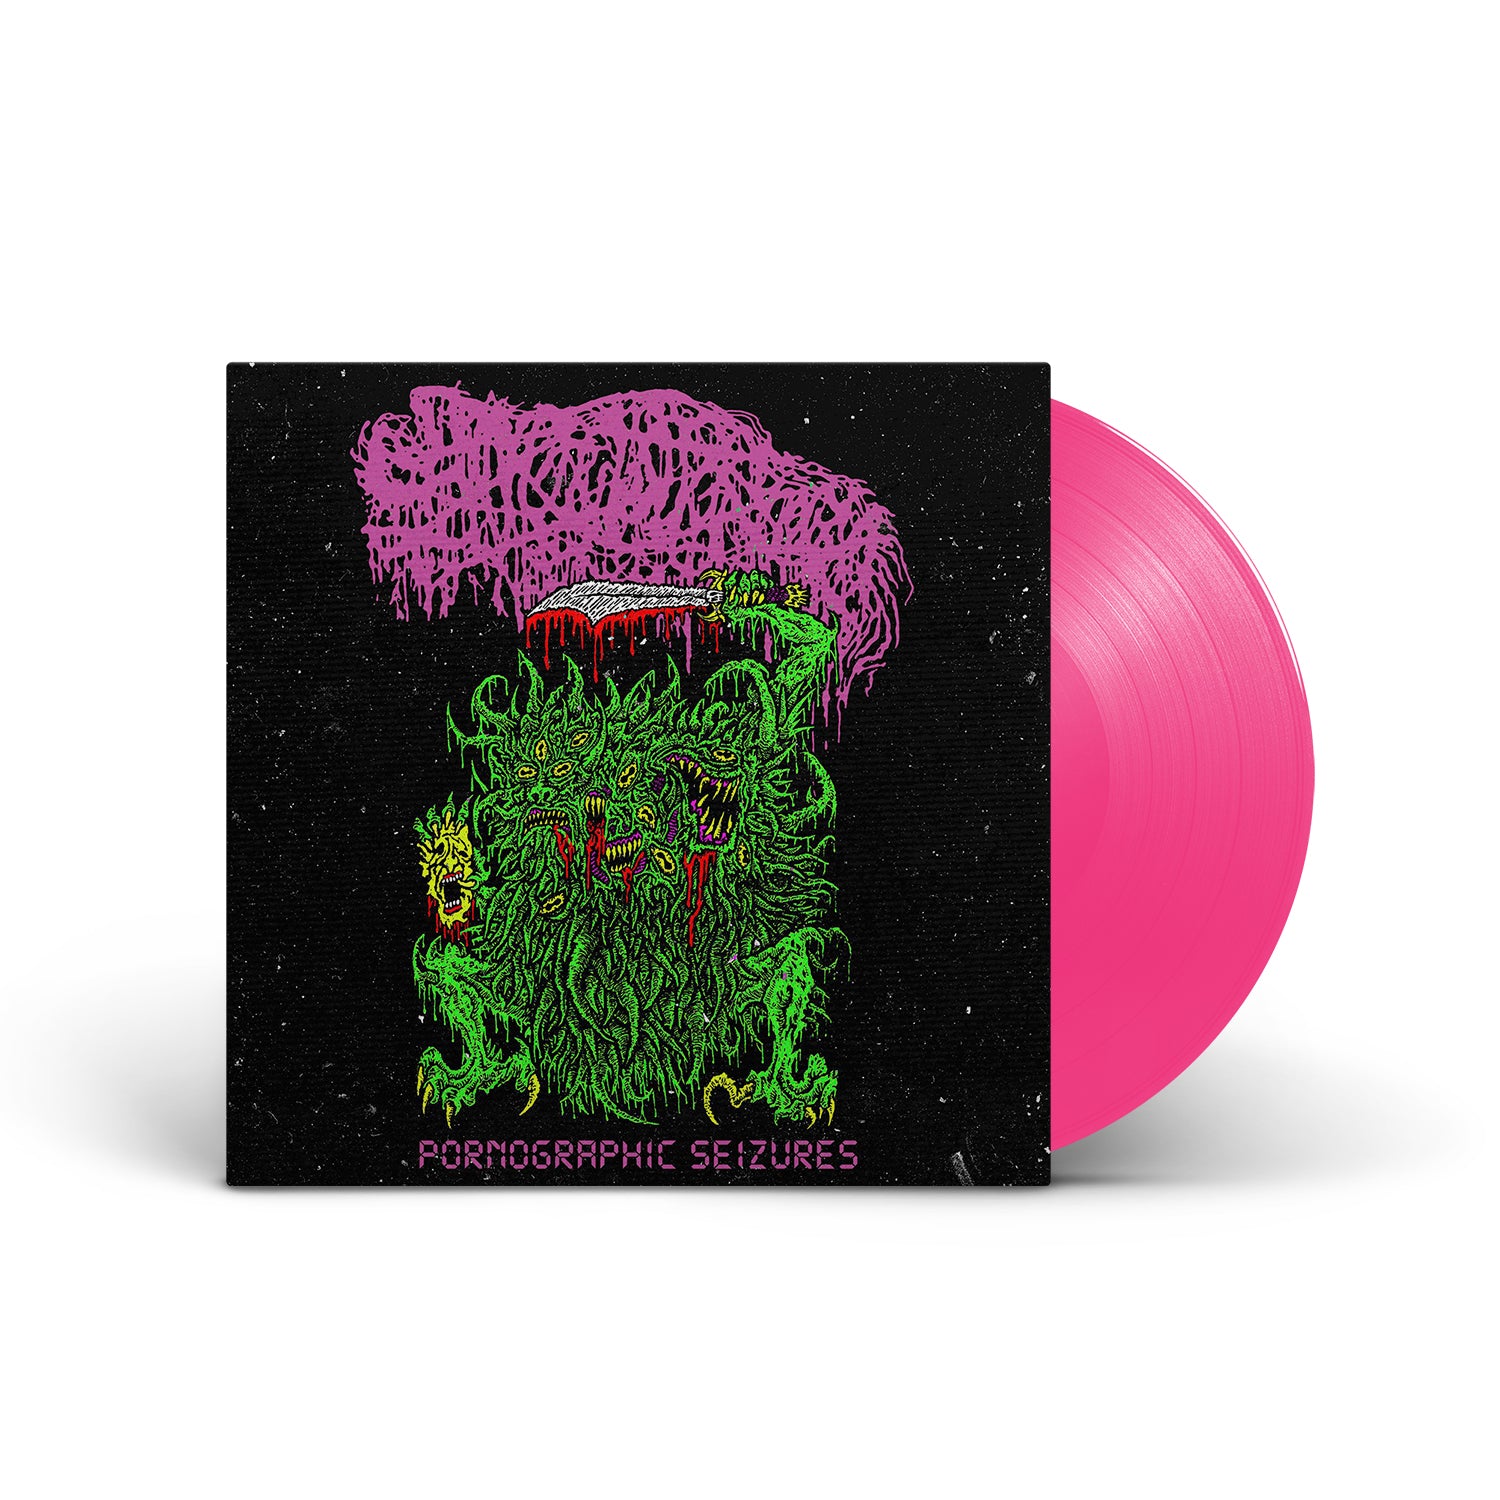 SANGUISUGABOGG - Pornographic Seizures - EP (Re-issue 2021) - Hot Pink LP